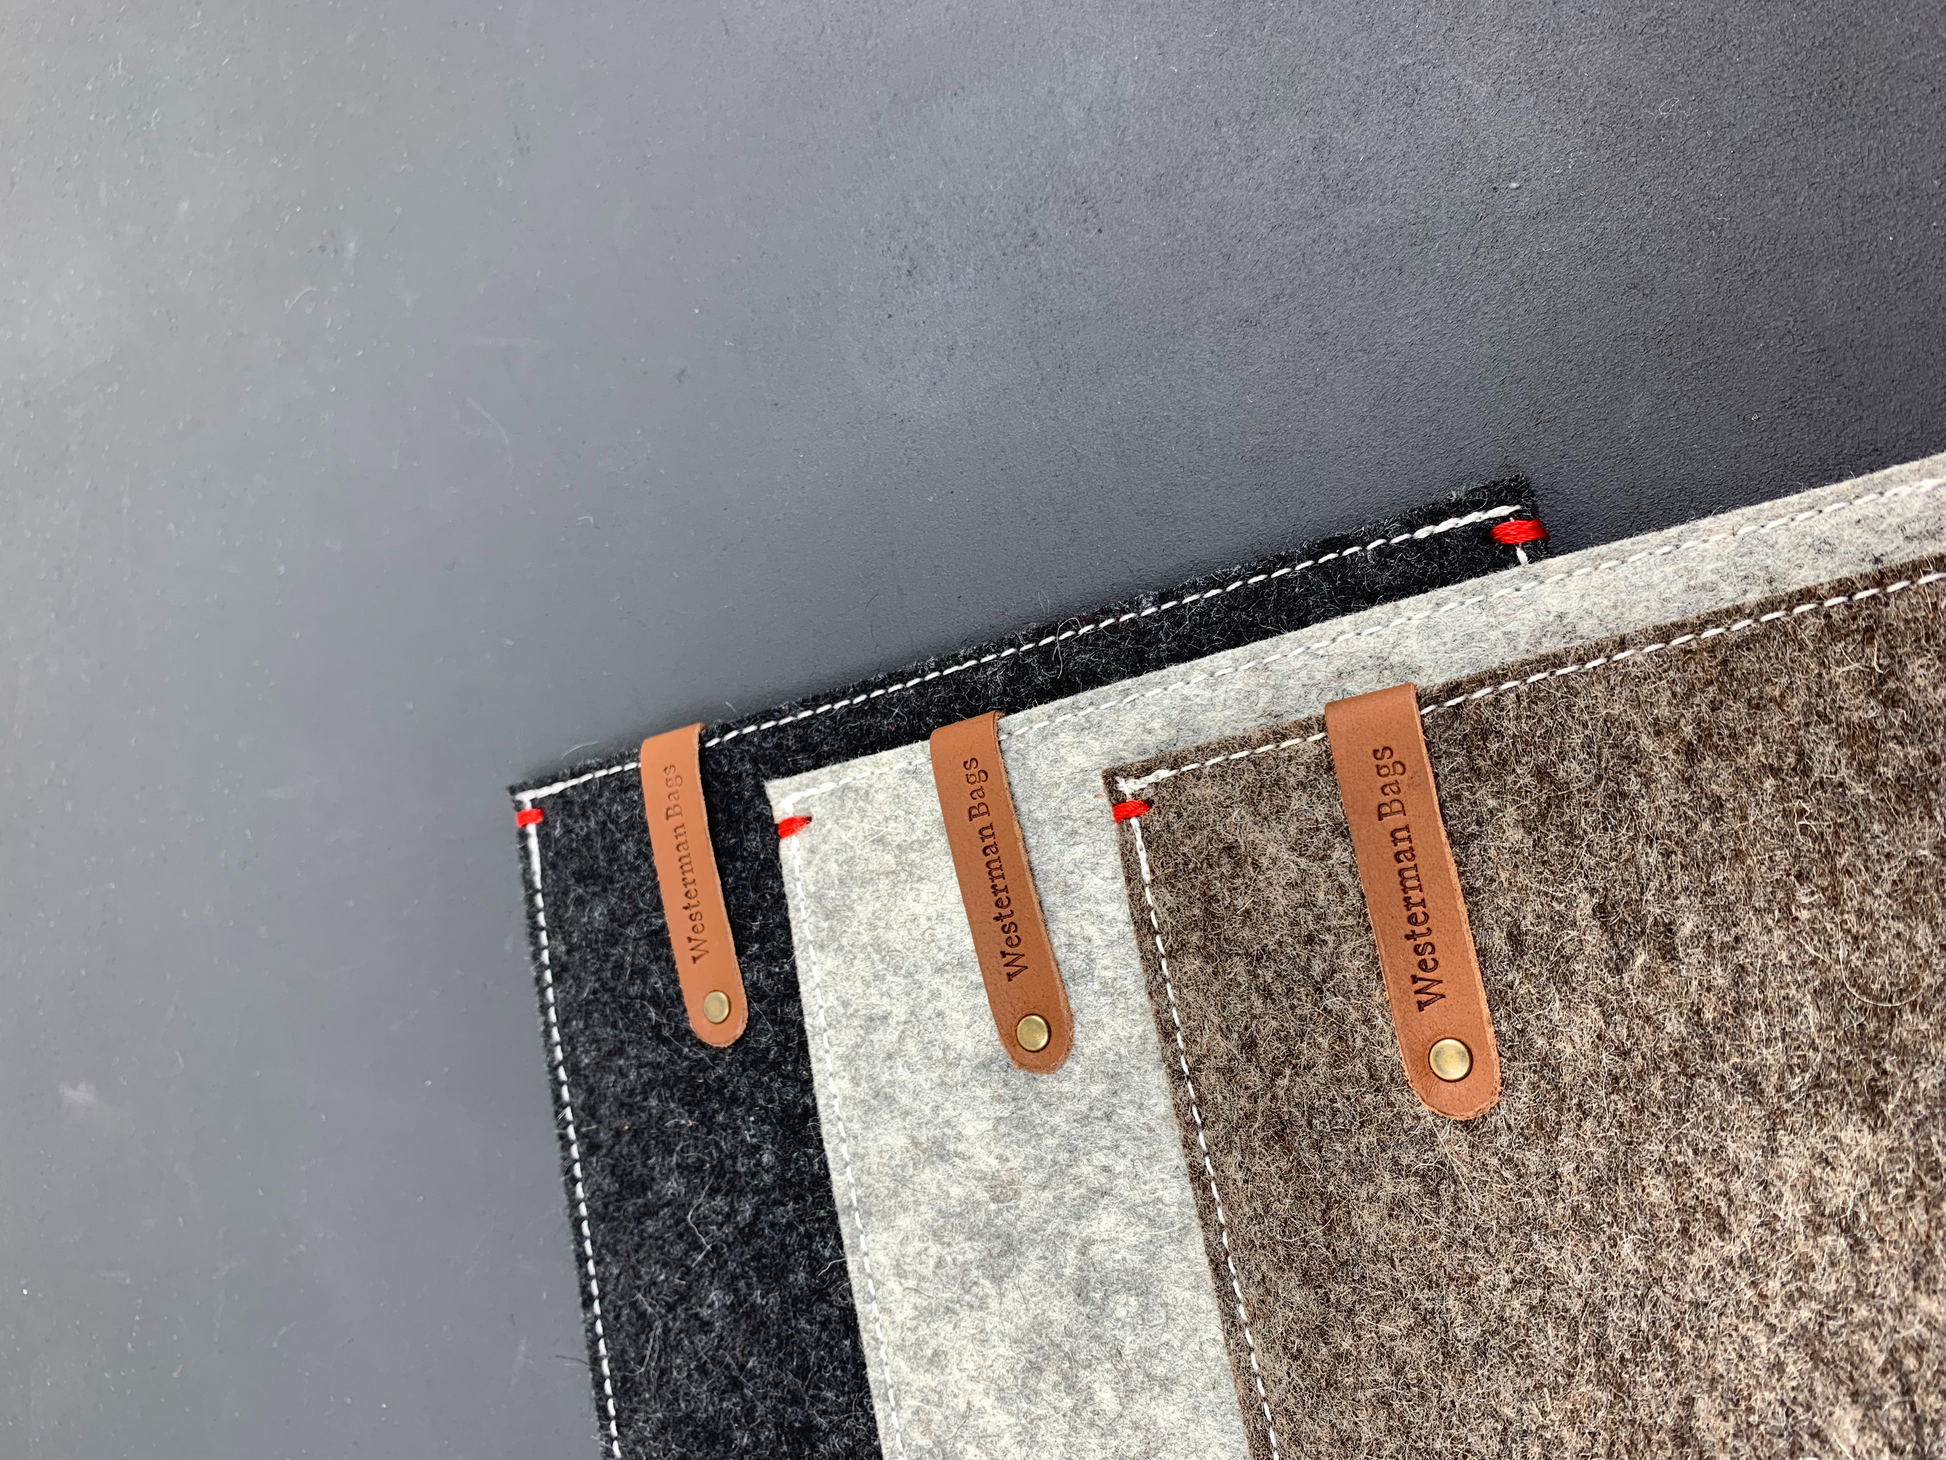 MS Surface Pro | Pixelbook felt sleeve - vilten hoes in grijs - zwart of zandbruin. - Westerman Bags vilten tassen en hoezen. Dutch Design.